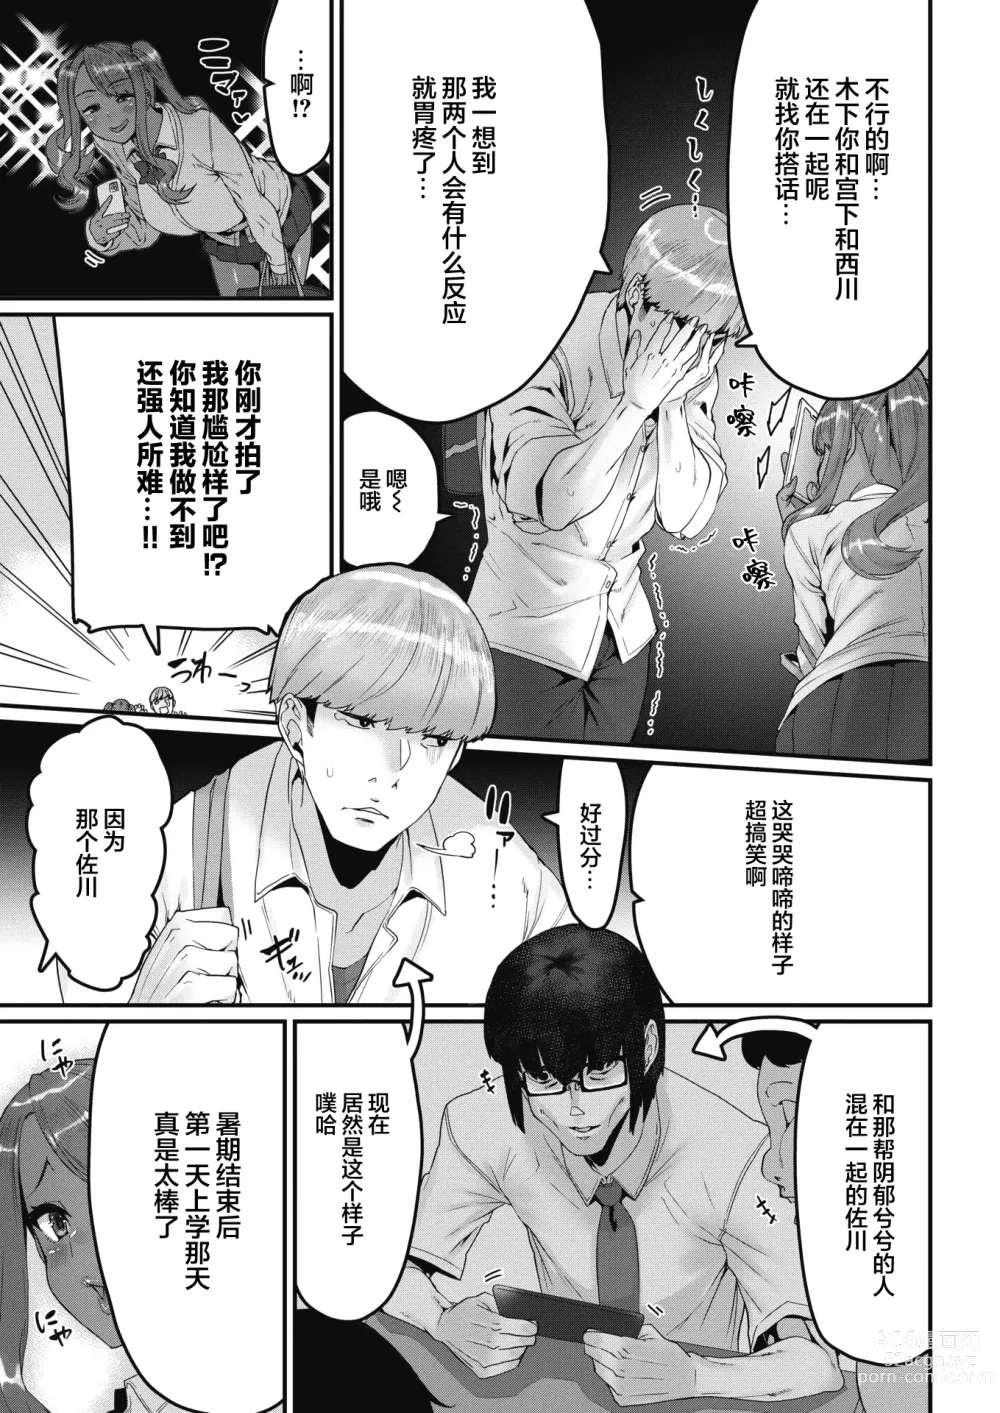 Page 3 of manga Moteasobareteiru!? (decensored)